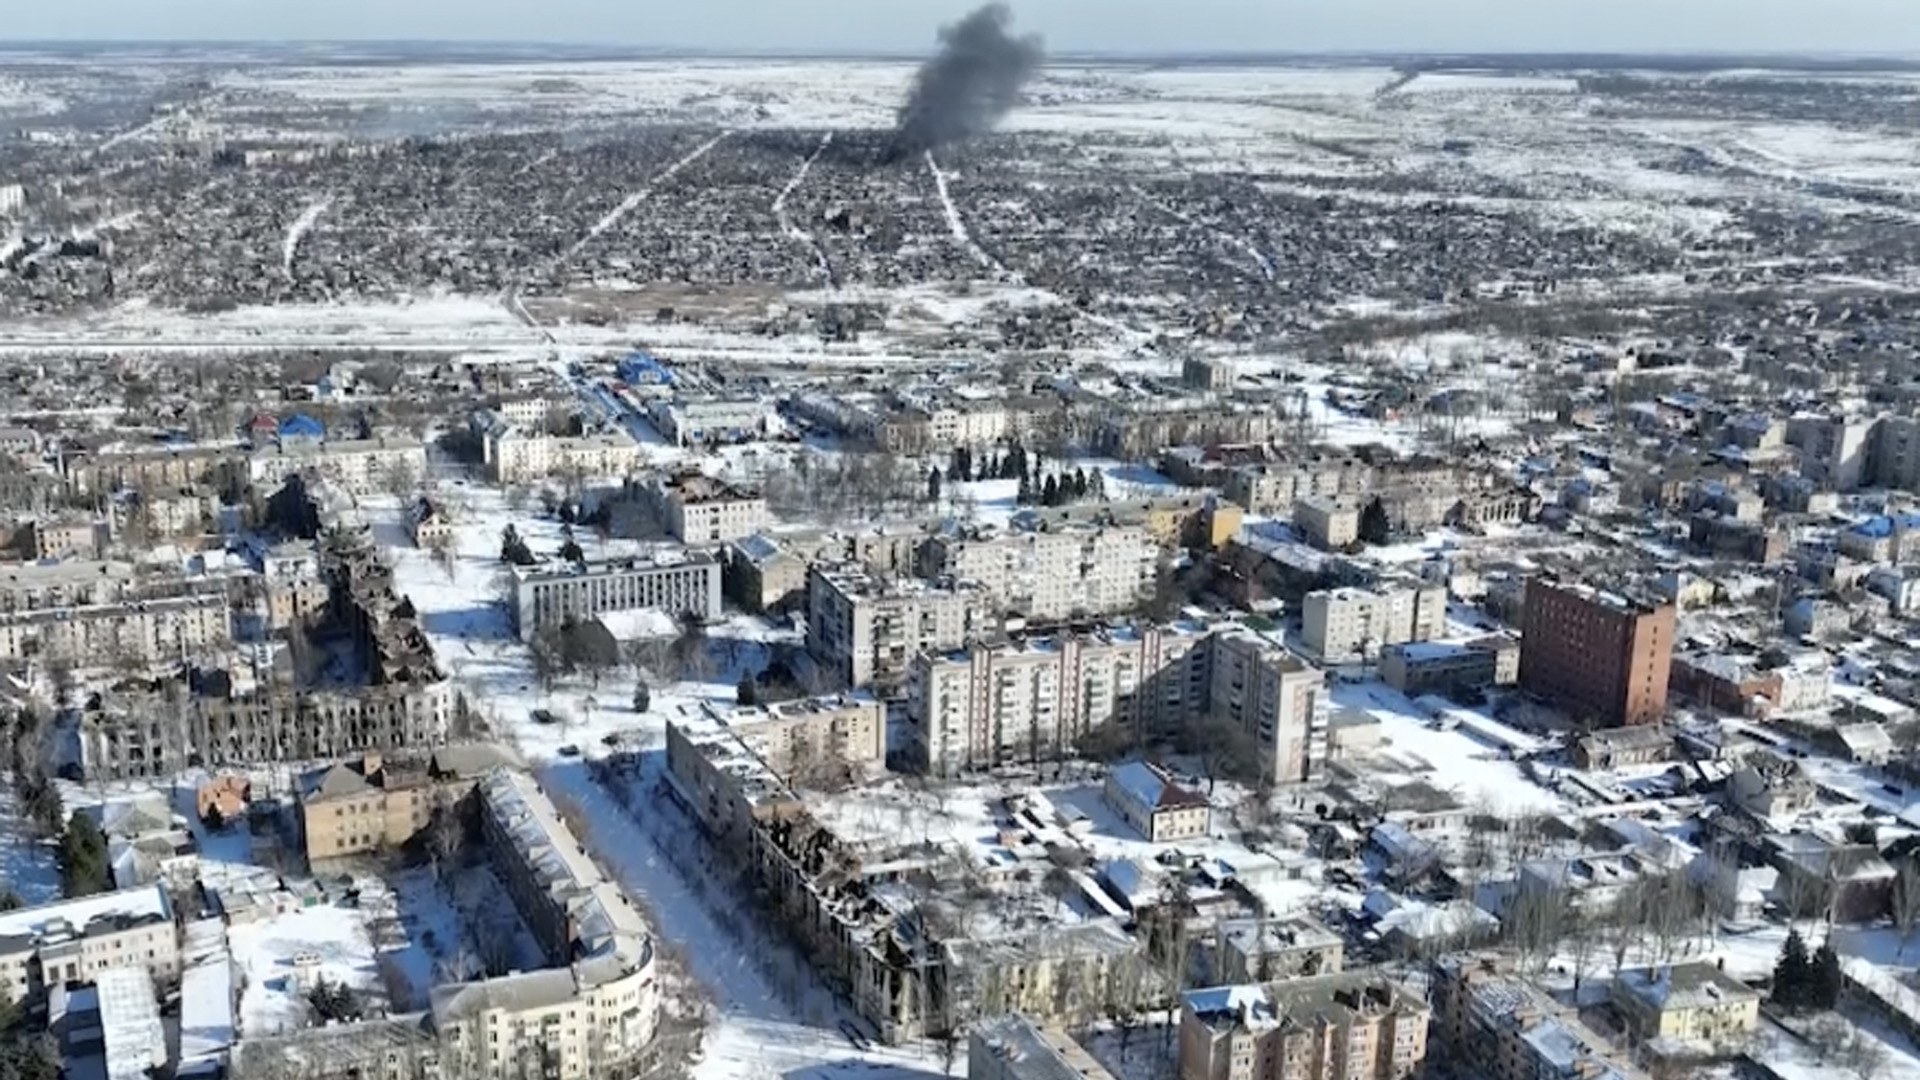 De nouvelles séquences vidéo de Bakhmut tournées depuis les airs avec un drone pour l'Associated Press montrent comment la plus longue bataille de l'invasion russe d'un an a transformé la ville des mines de sel et de gypse dans l'est de l'Ukraine en une ville fantôme. Les images ont été tournées le 13 février. Depuis les airs, l'ampleur de la destruction devient évidente.